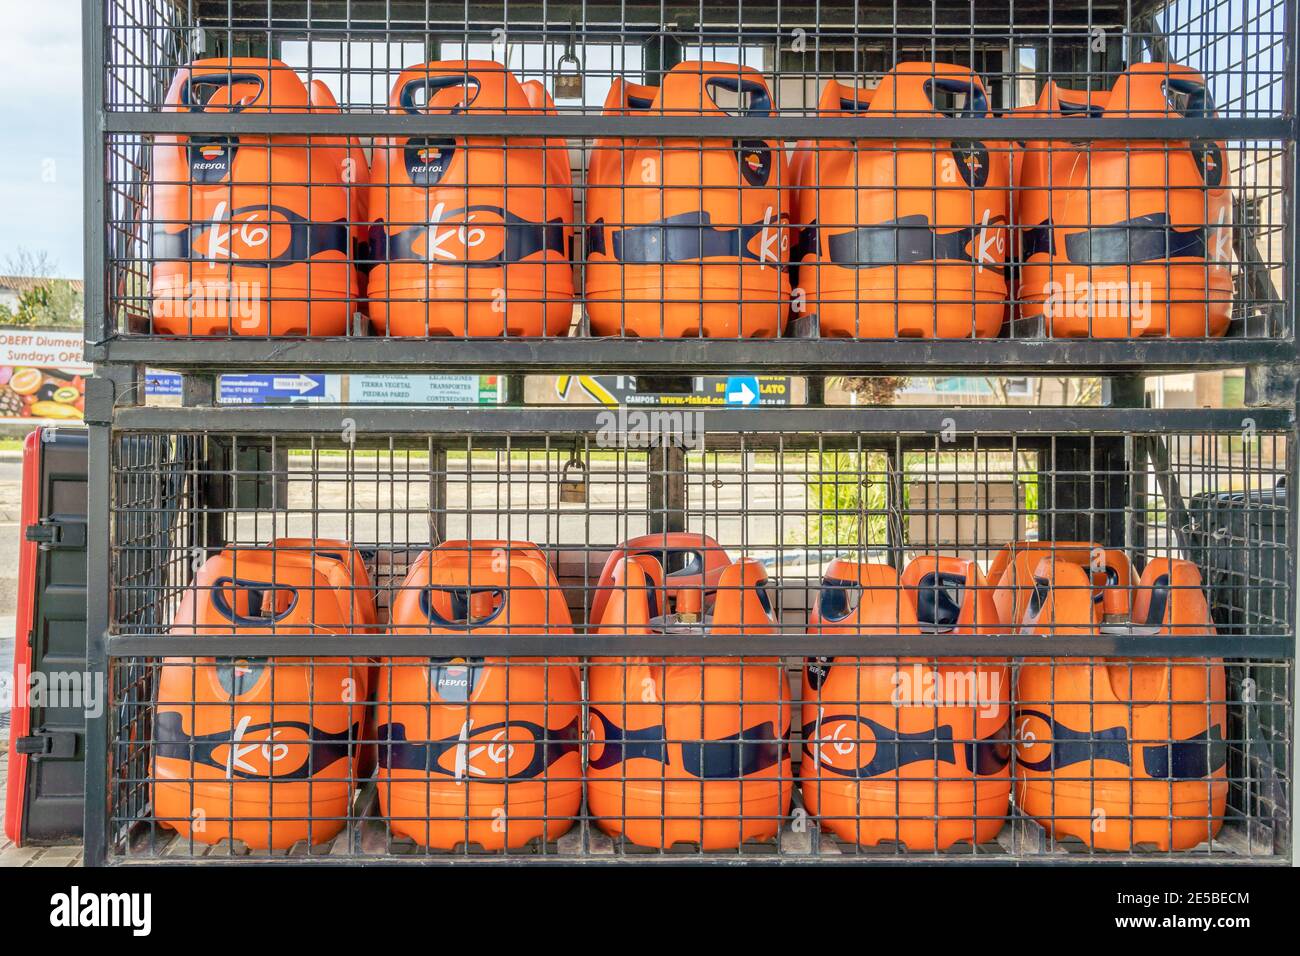 Campos, Espagne; janvier 23 2021: bouteilles de butane repsol dans une cage  métallique appartenant à une station de gaz et de service Photo Stock -  Alamy